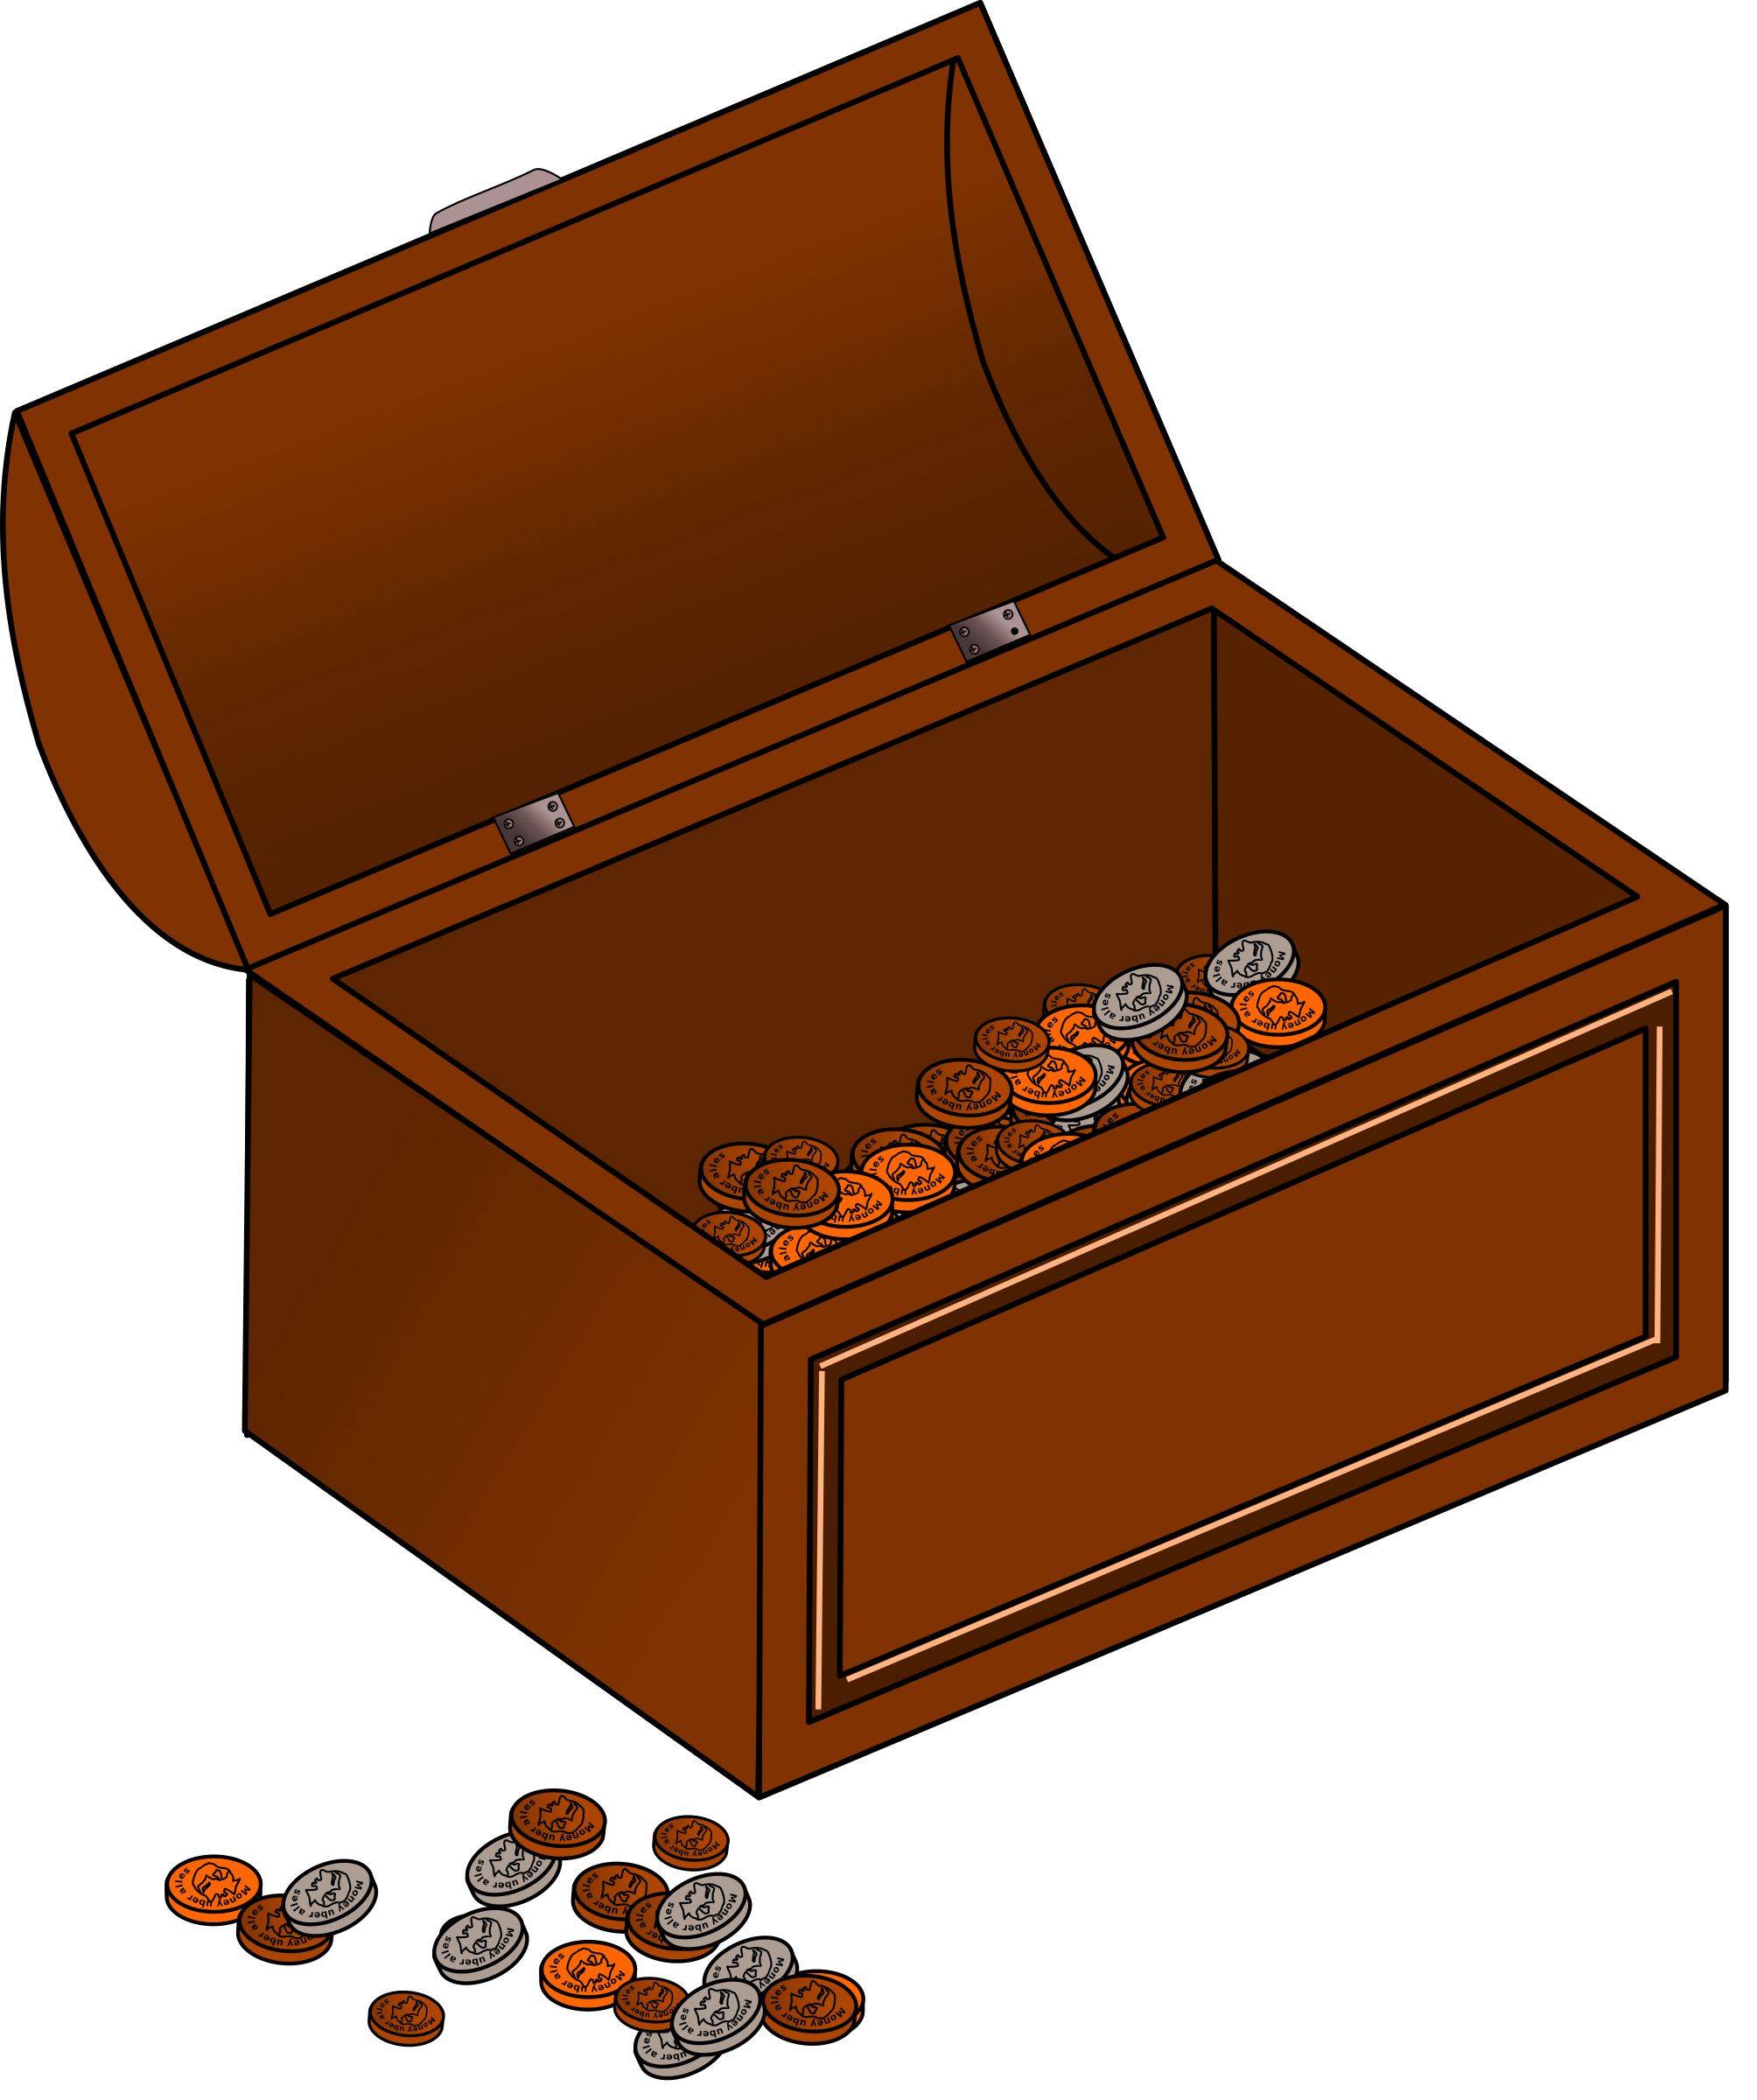 Clipart - Treasure chest